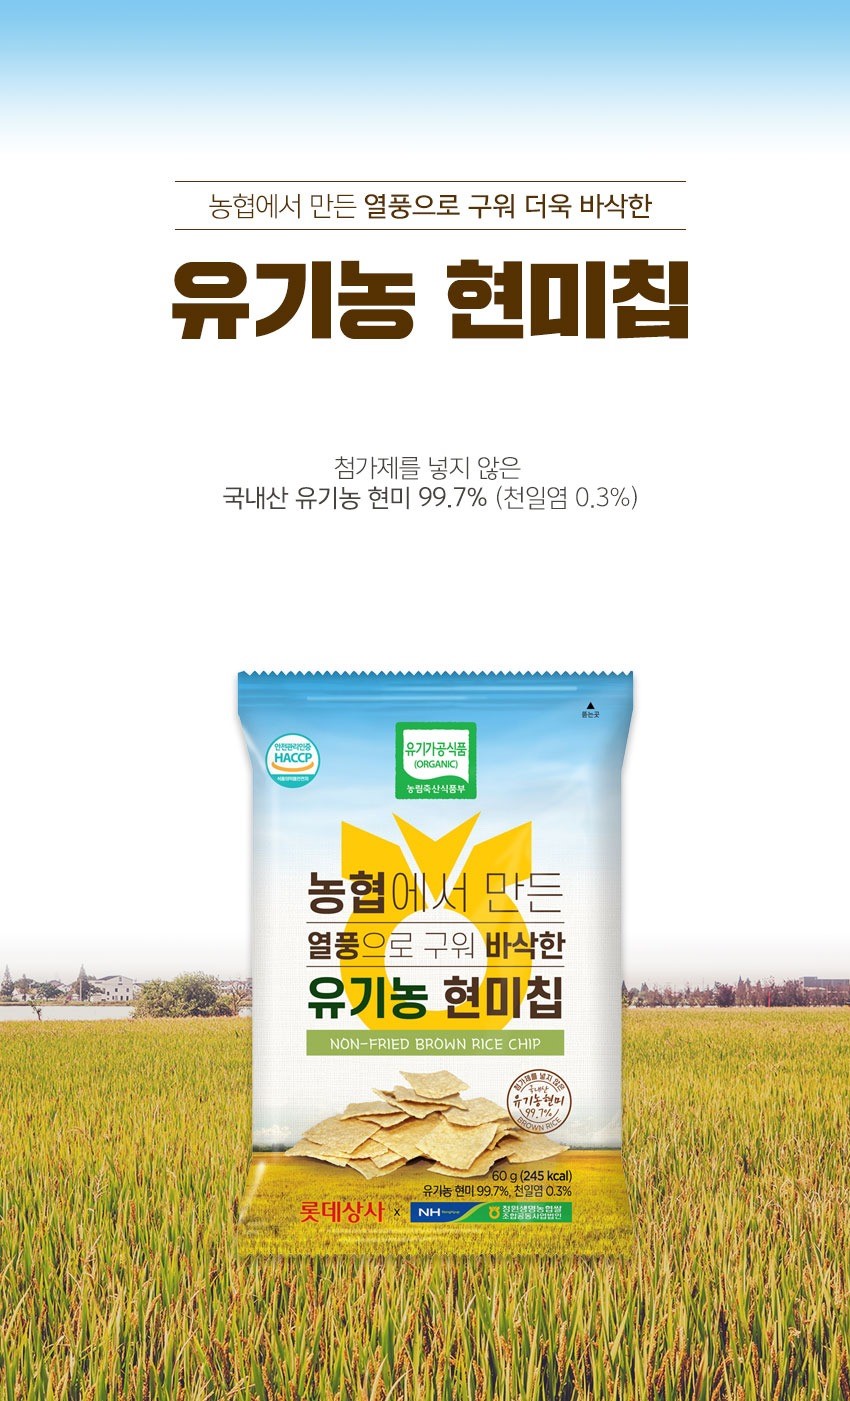 韓國食品-[農林食品] 有機玄米脆片 60g